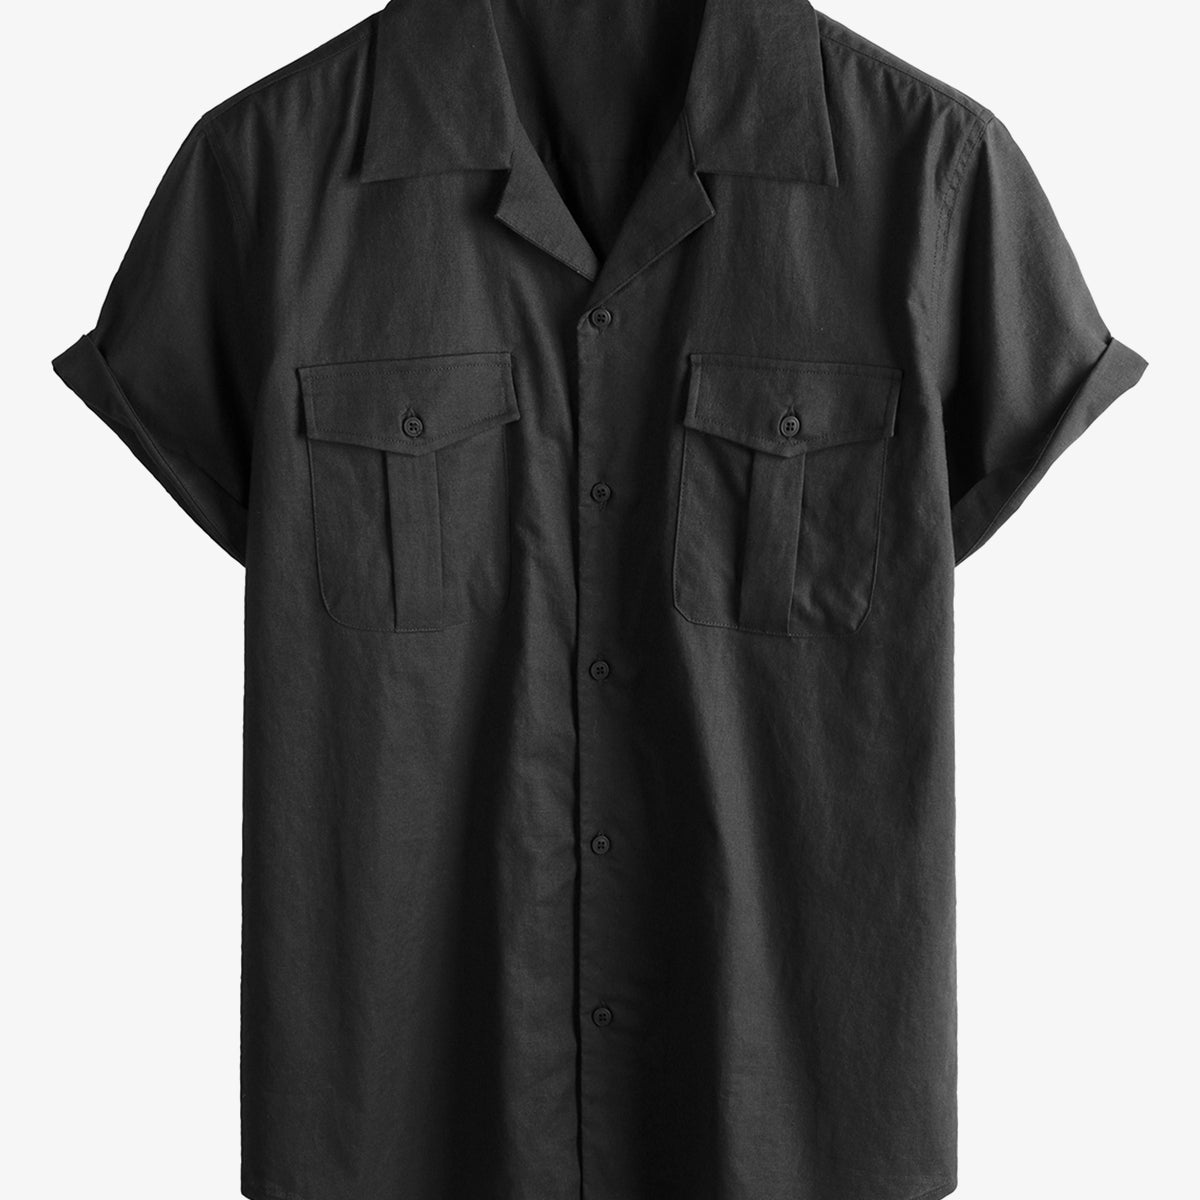 Men's Hawaiian Cotton Linen Pocket Cuban Beach Short Sleeve Summer Button Camp Shirt